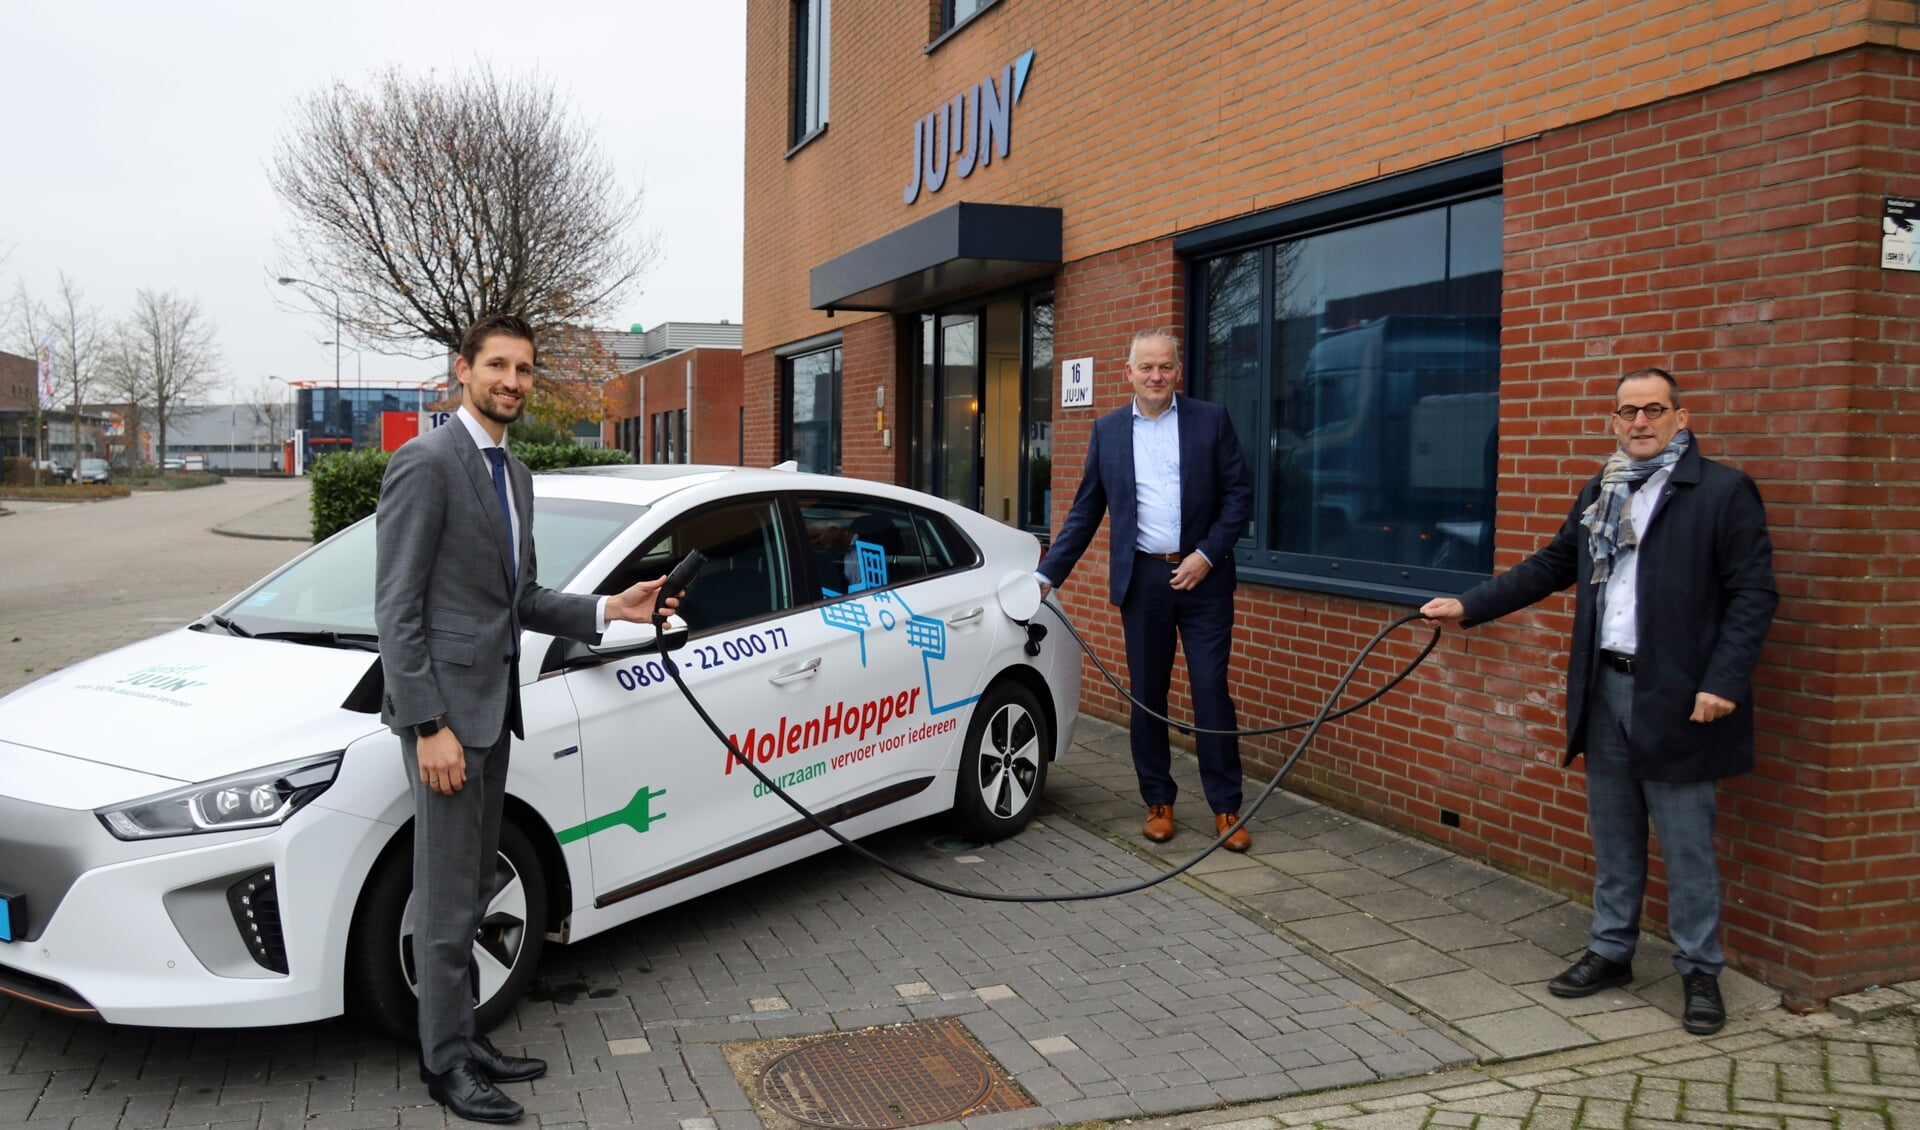 Wethouder Kraaijeveld, gemeente Gorinchem (links), Arjen Juijn, Vervoersbedrijf Juijn BV (midden) en wethouder Quik (rechts) bij een van de nieuwe elektrische MolenHopper taxi's voor het Wmo-vervoer 